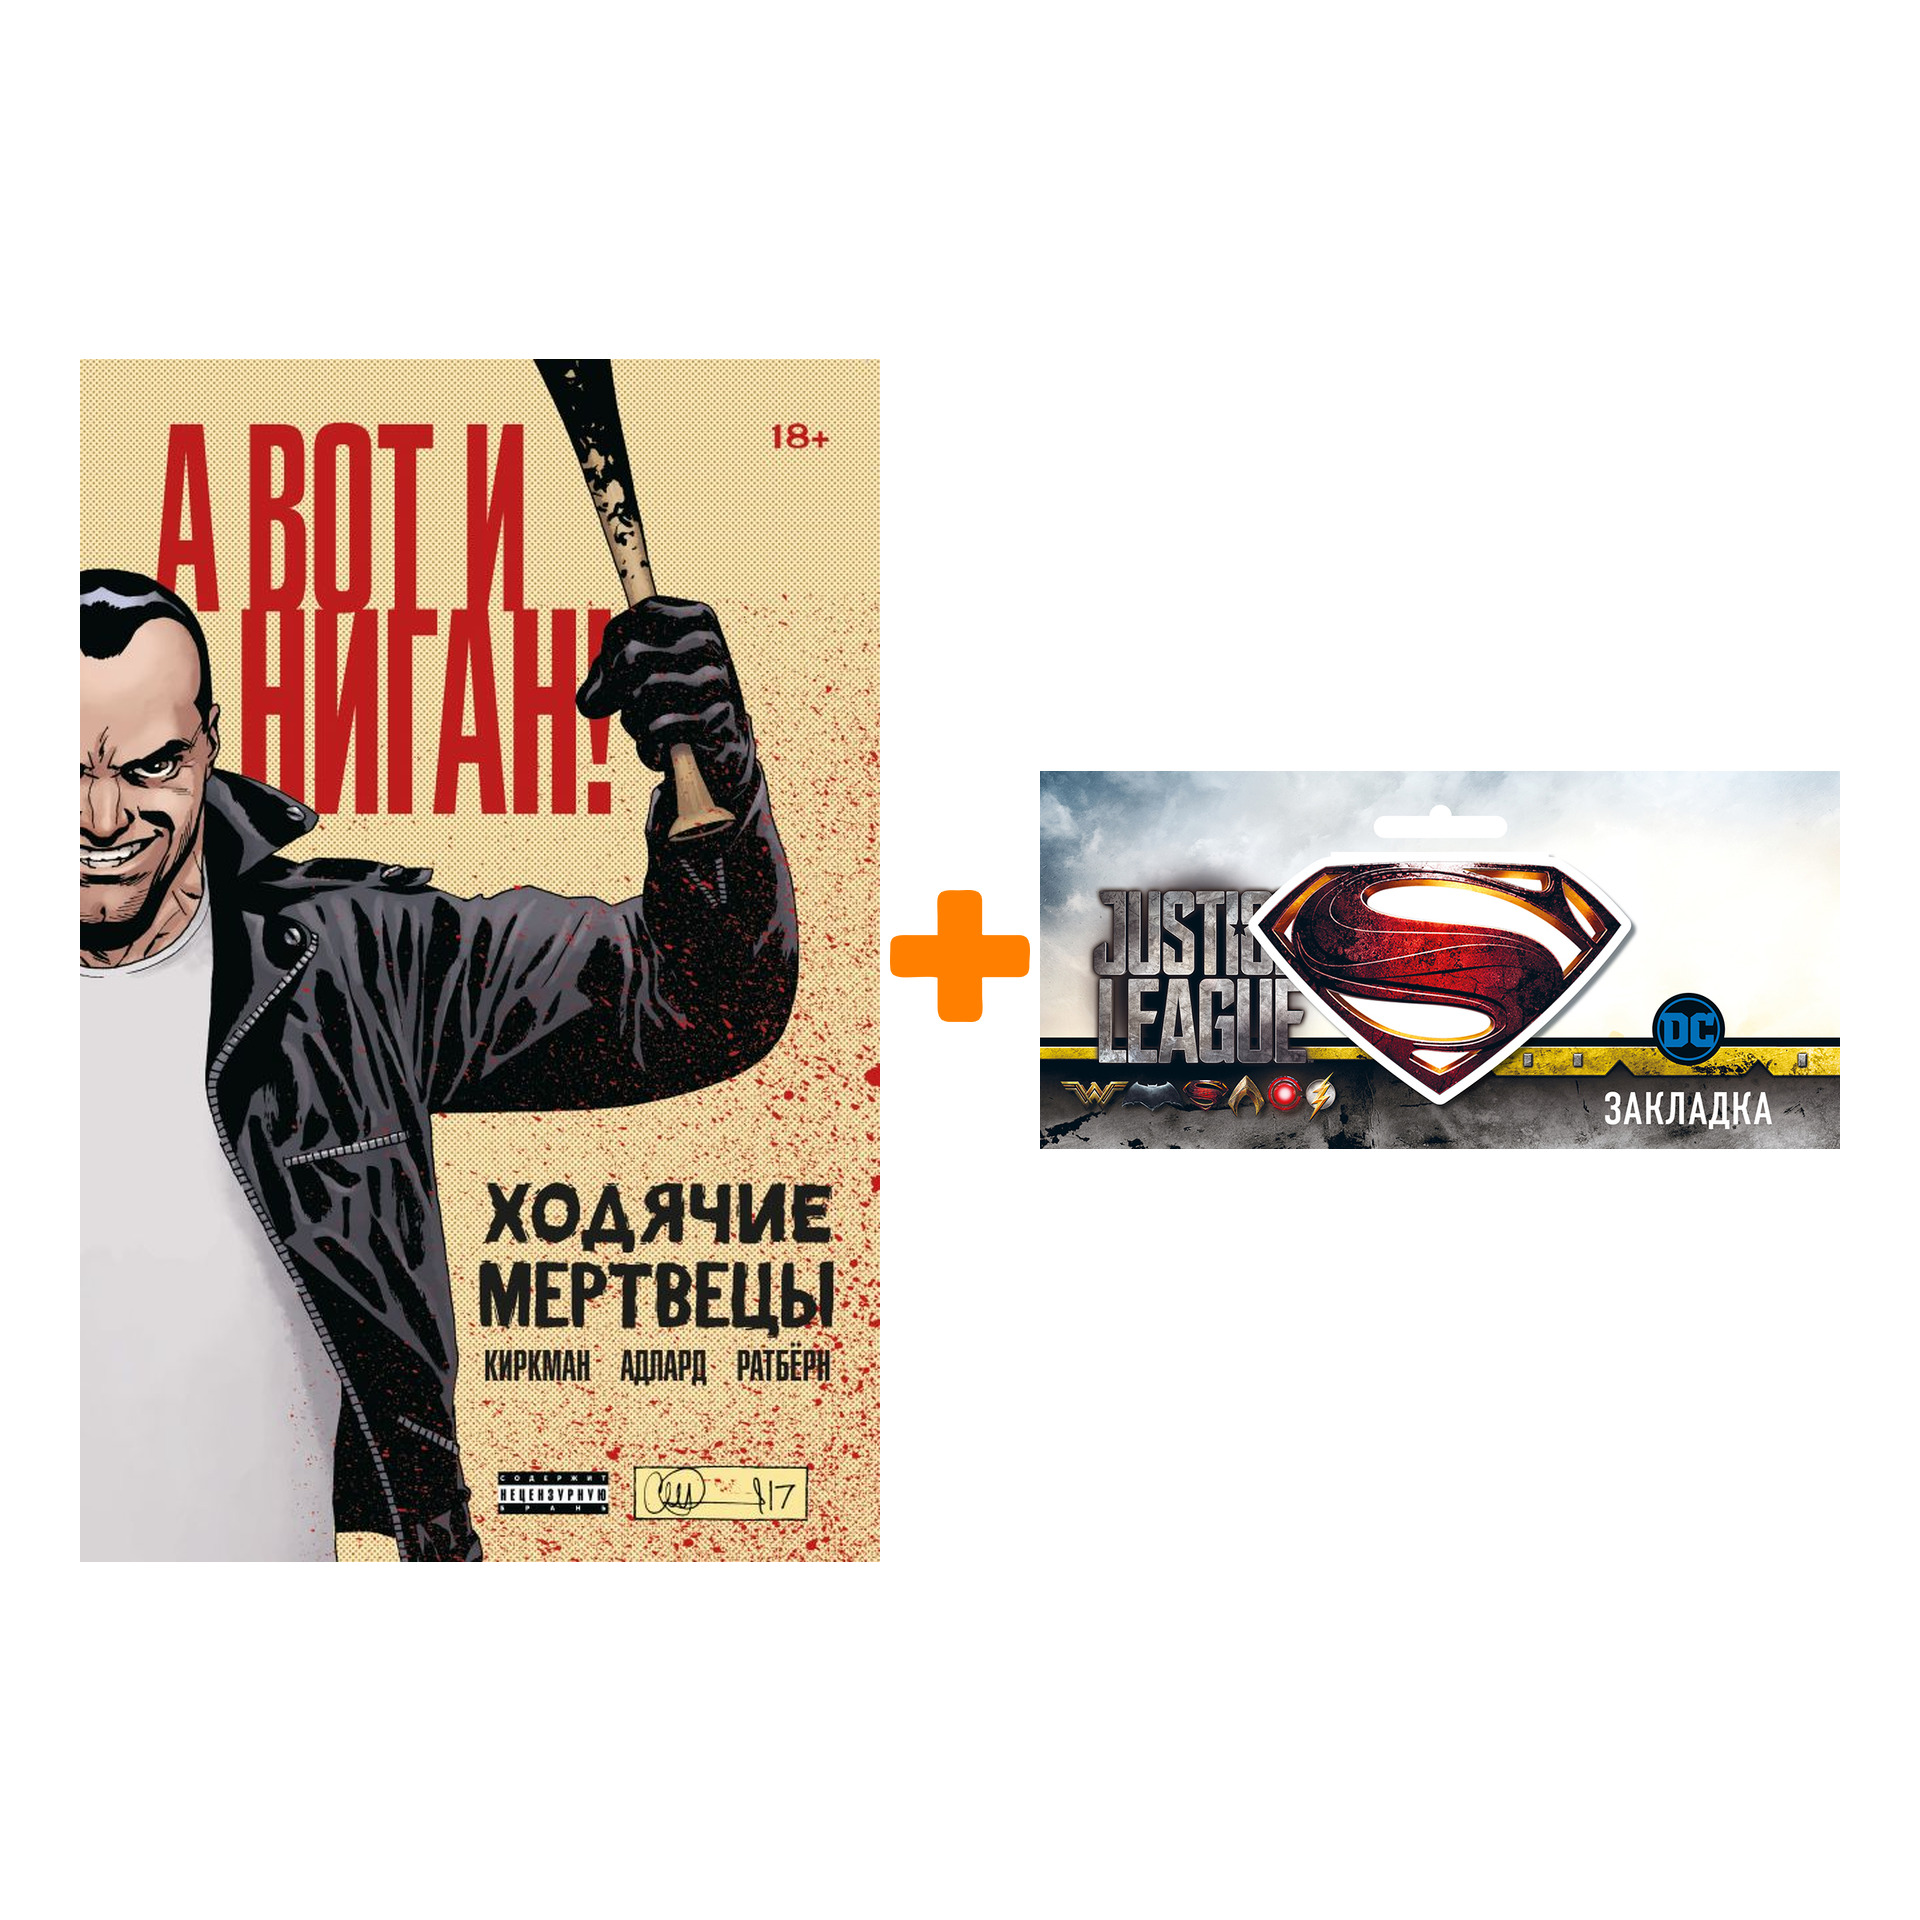 Набор Комикс Ходячие мертвецы А вот и Ниган! + Закладка DC Justice League Superman магнитная